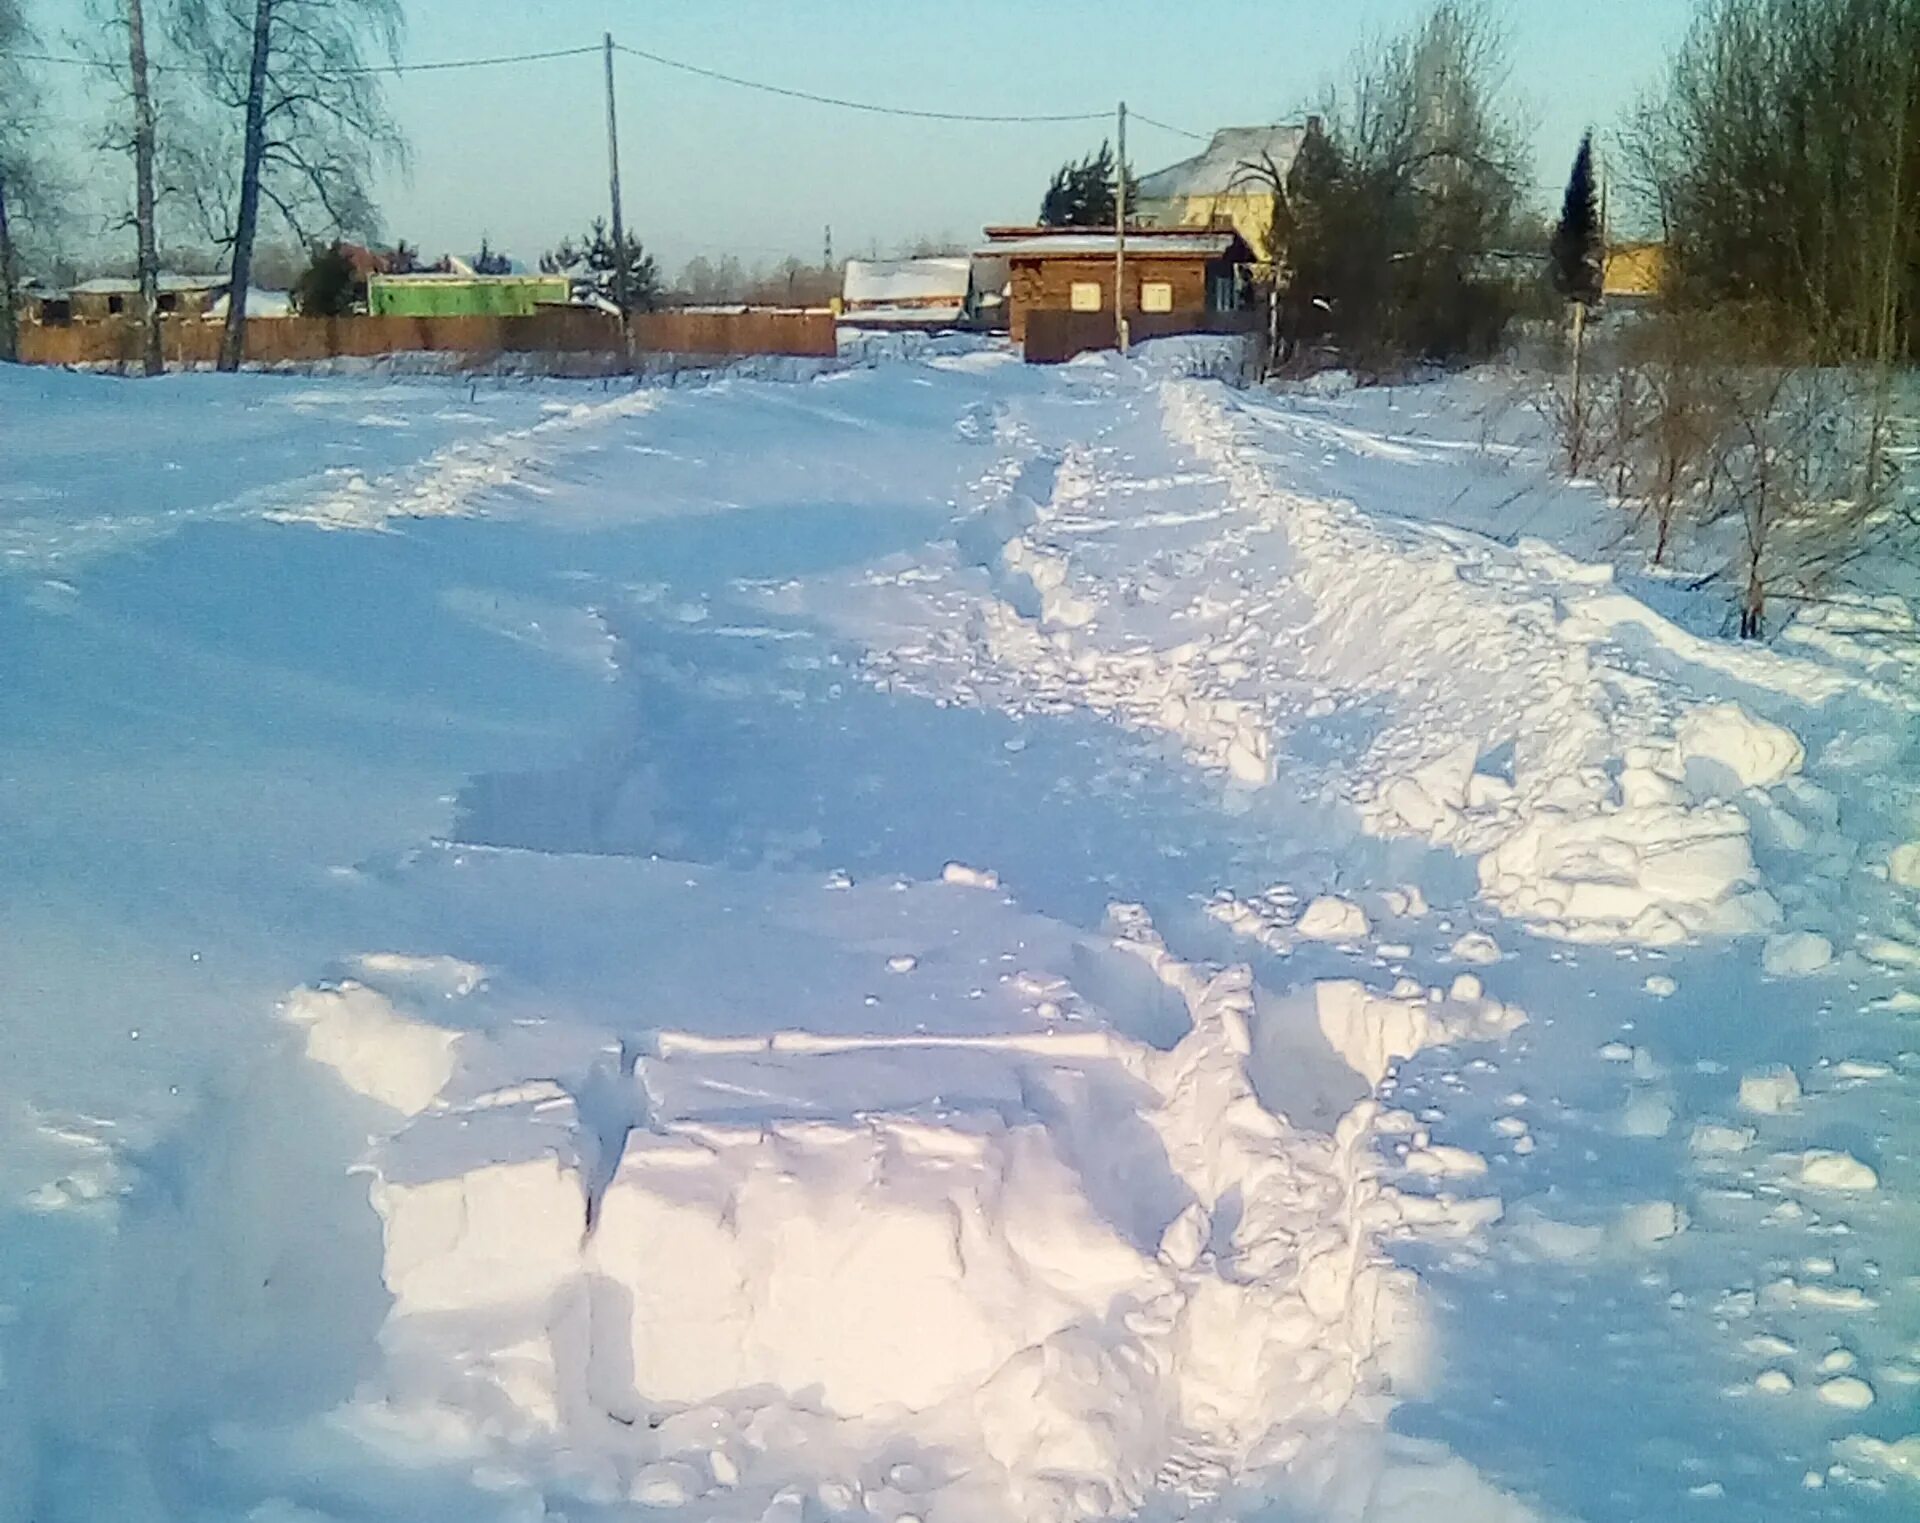 Дорогу завалило снегом. Много снега в деревне. Сугробы в деревне. Снегопад в деревне. Заснеженная дорога в деревне.